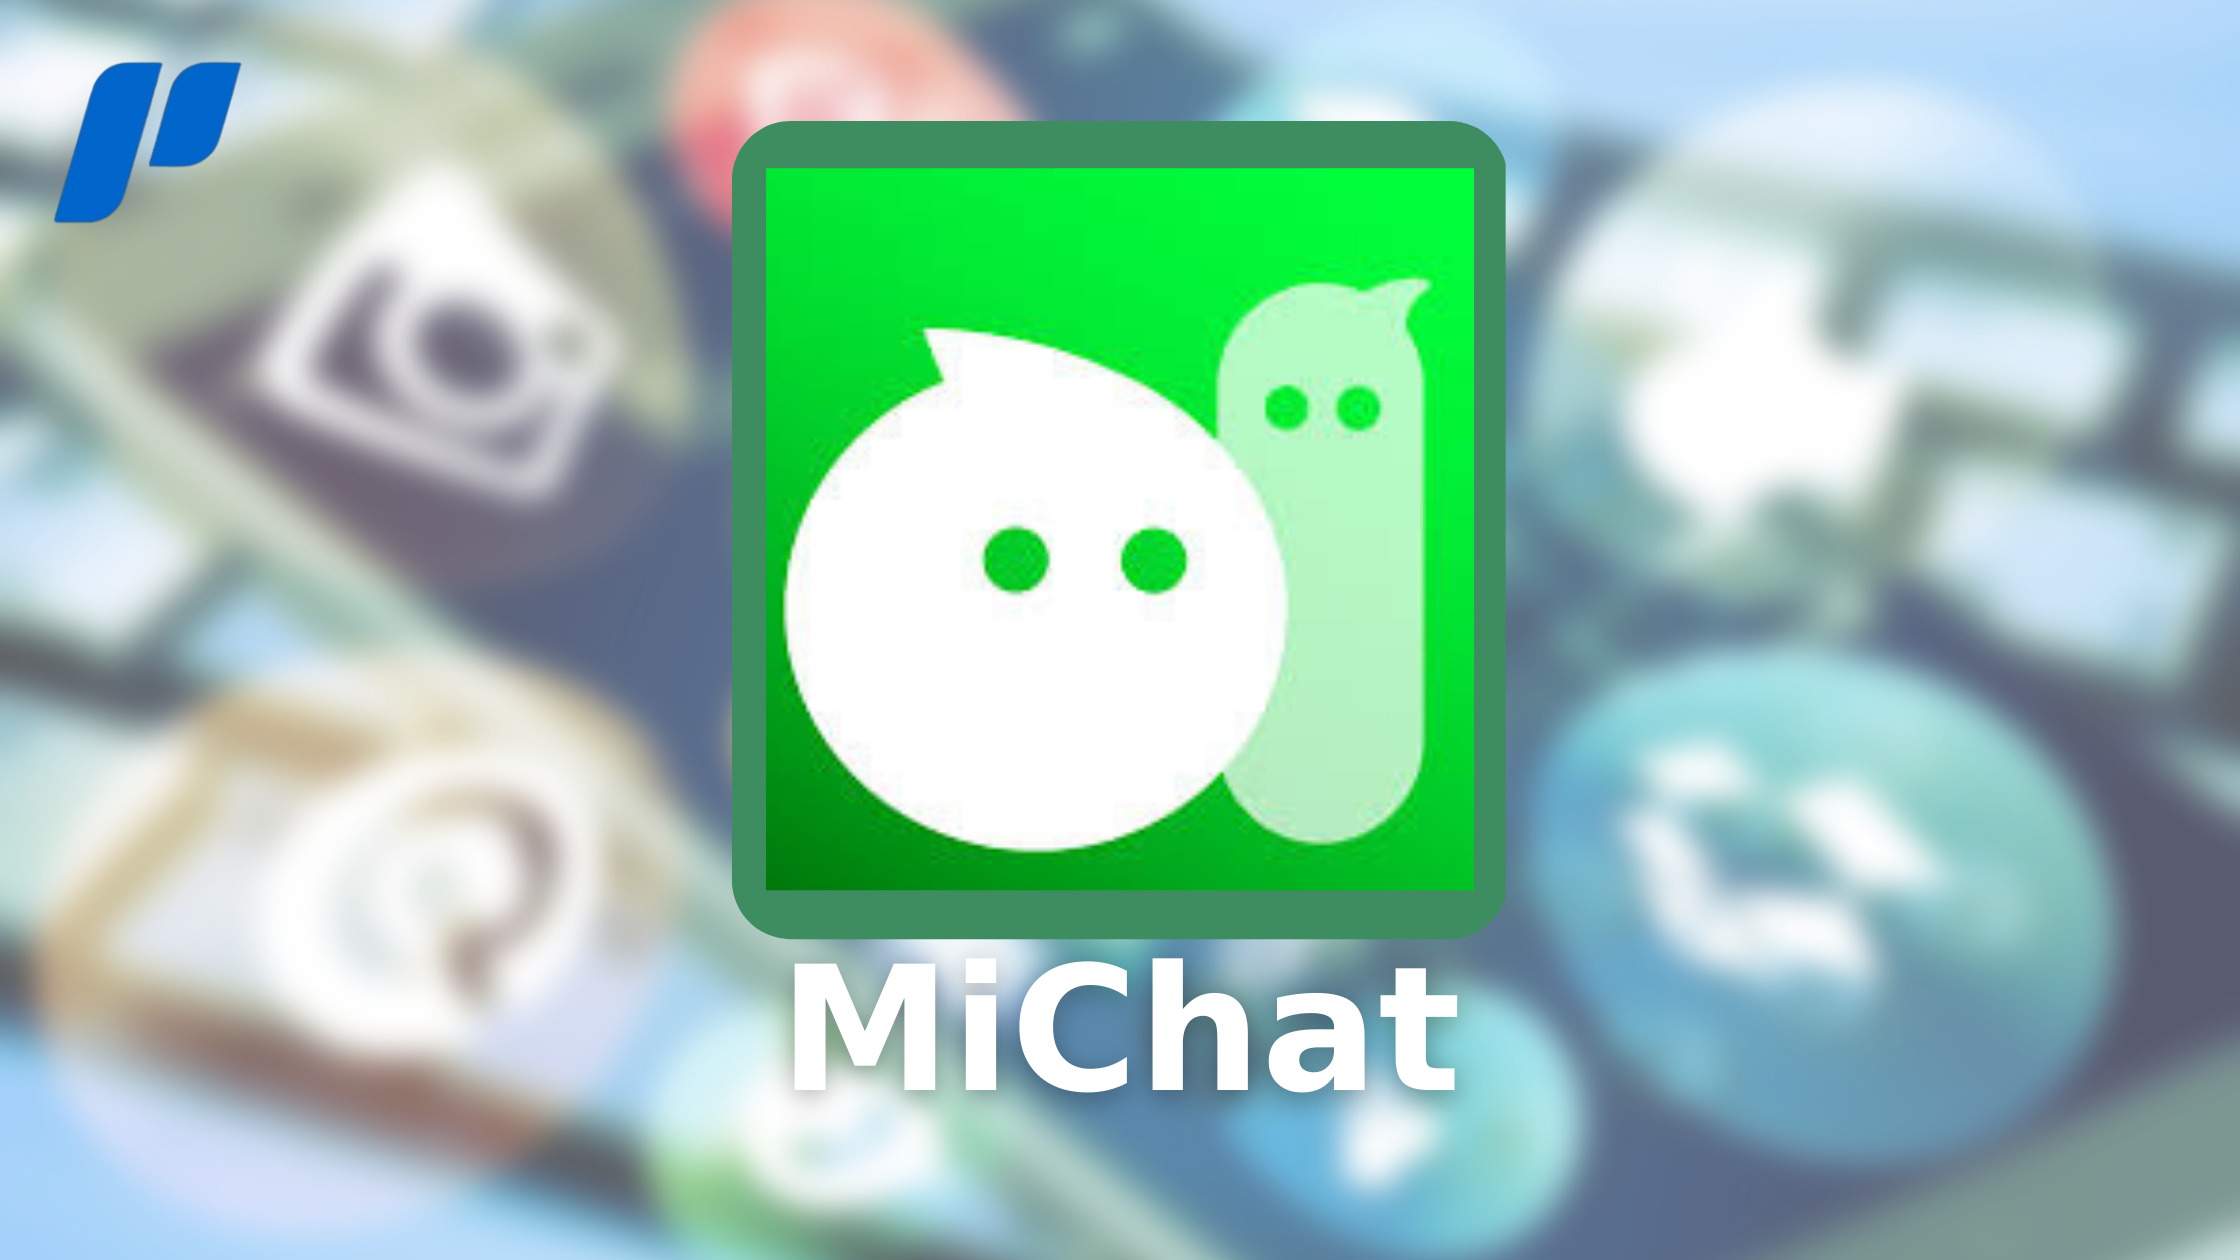 Pengguna MiChat terbanyak